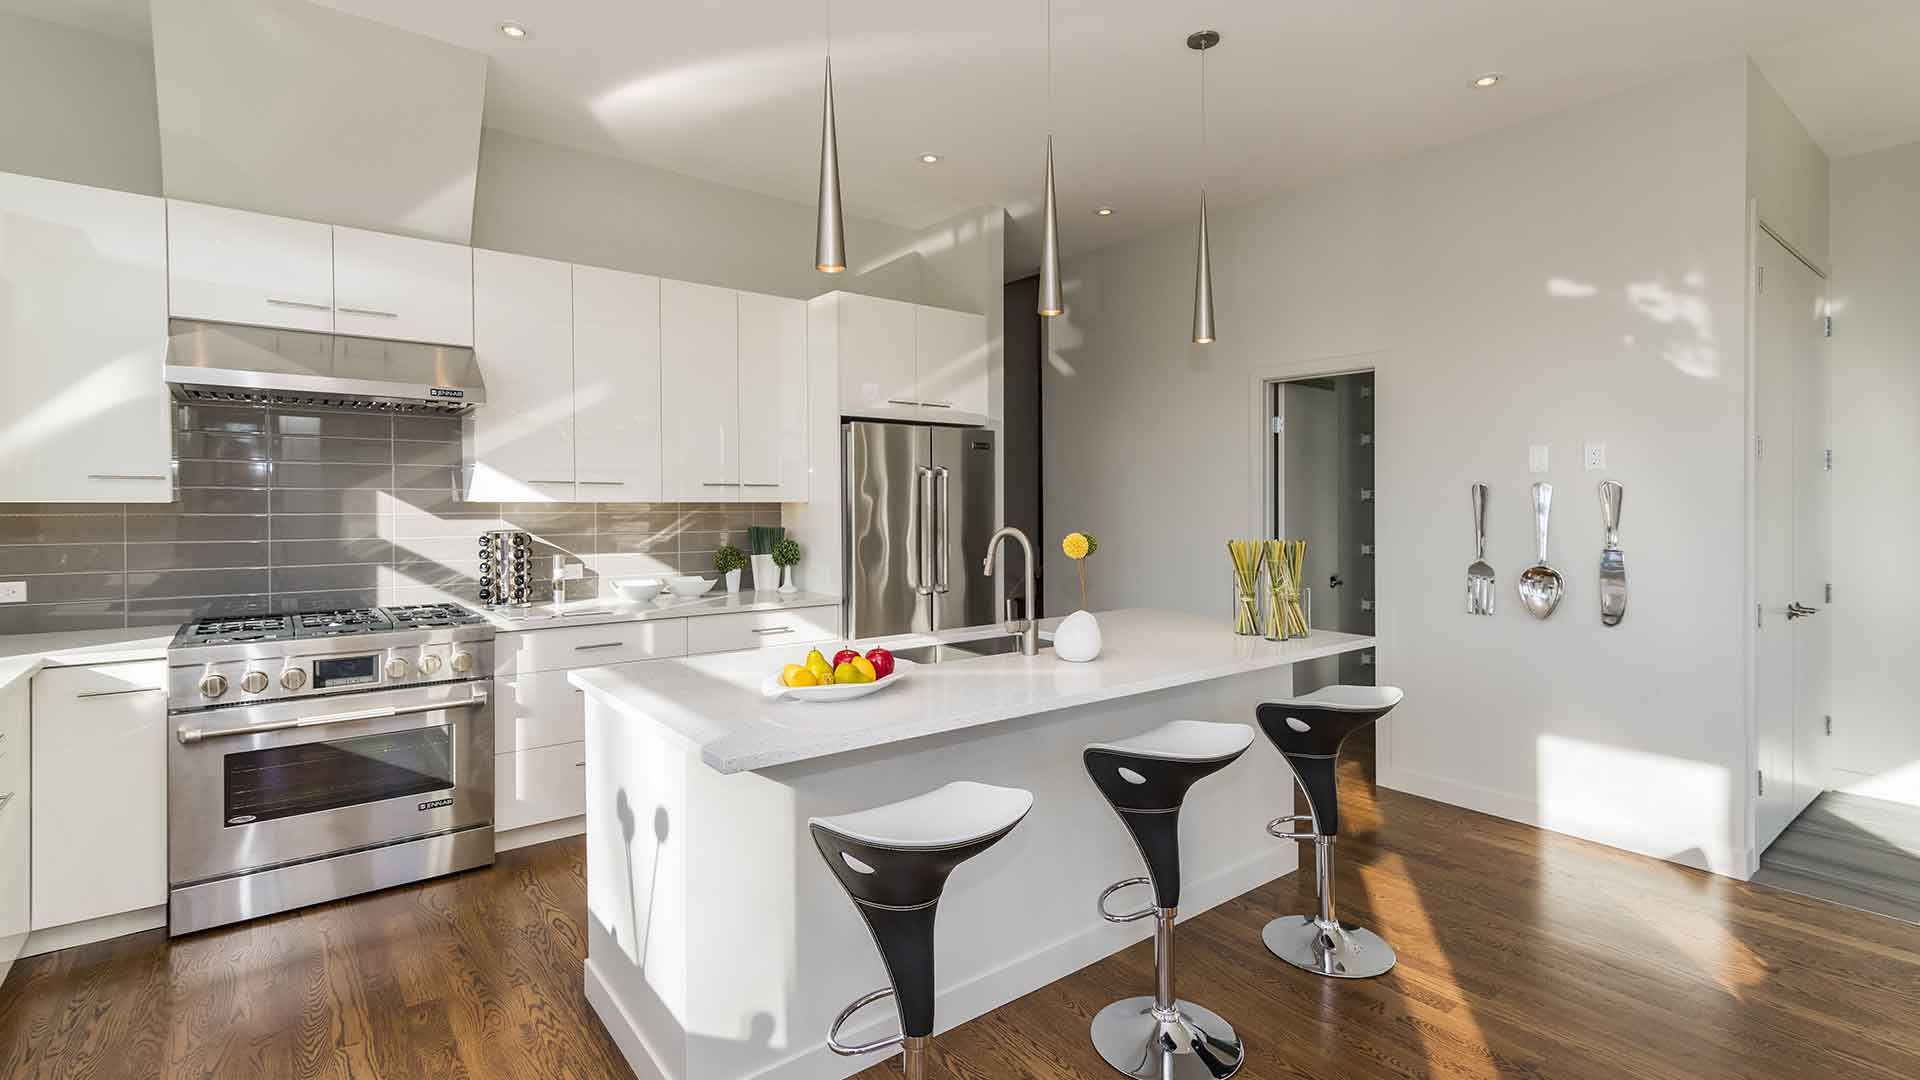 new kitchen interior design photos